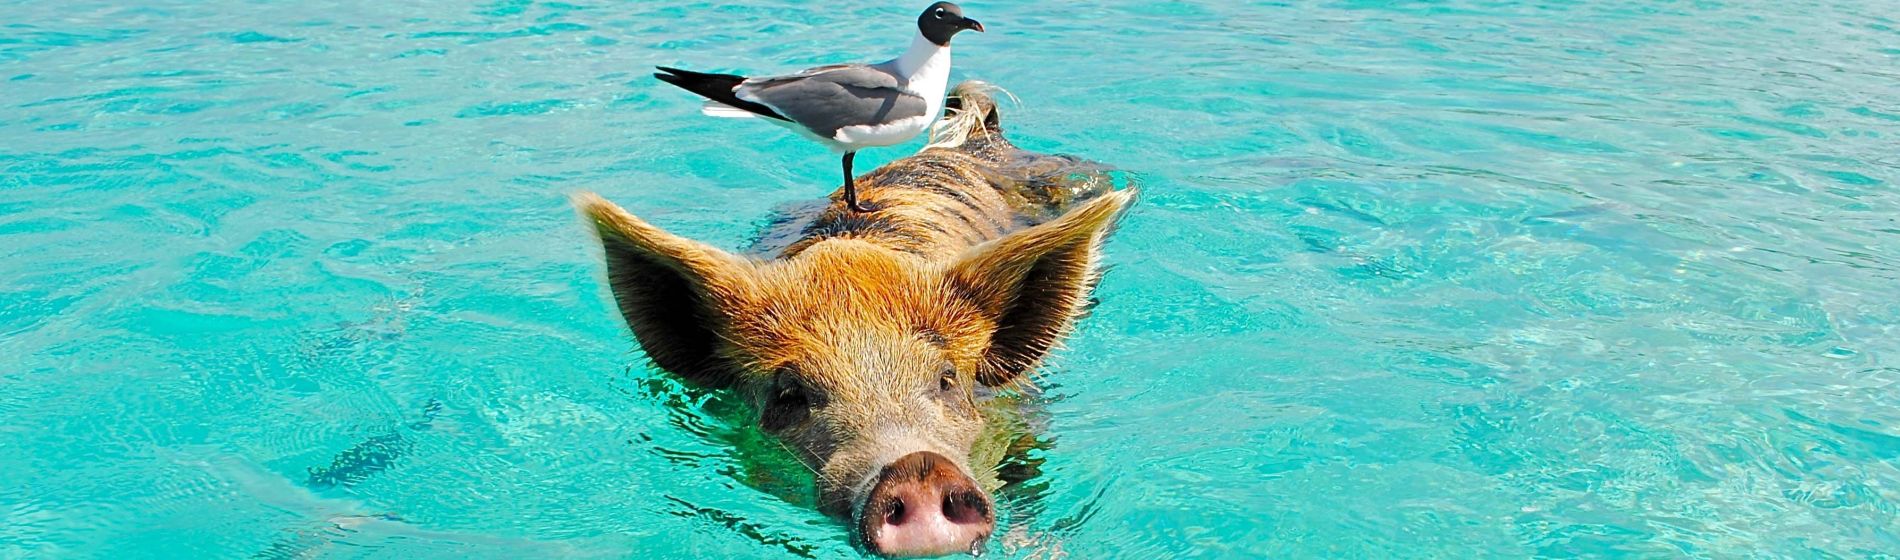 schweine_die_auf_den_bahamas_im_ozean_schwimmen_und_auf_dem_ruecken_einen_seetauglichen_vogel_reiten.jpg